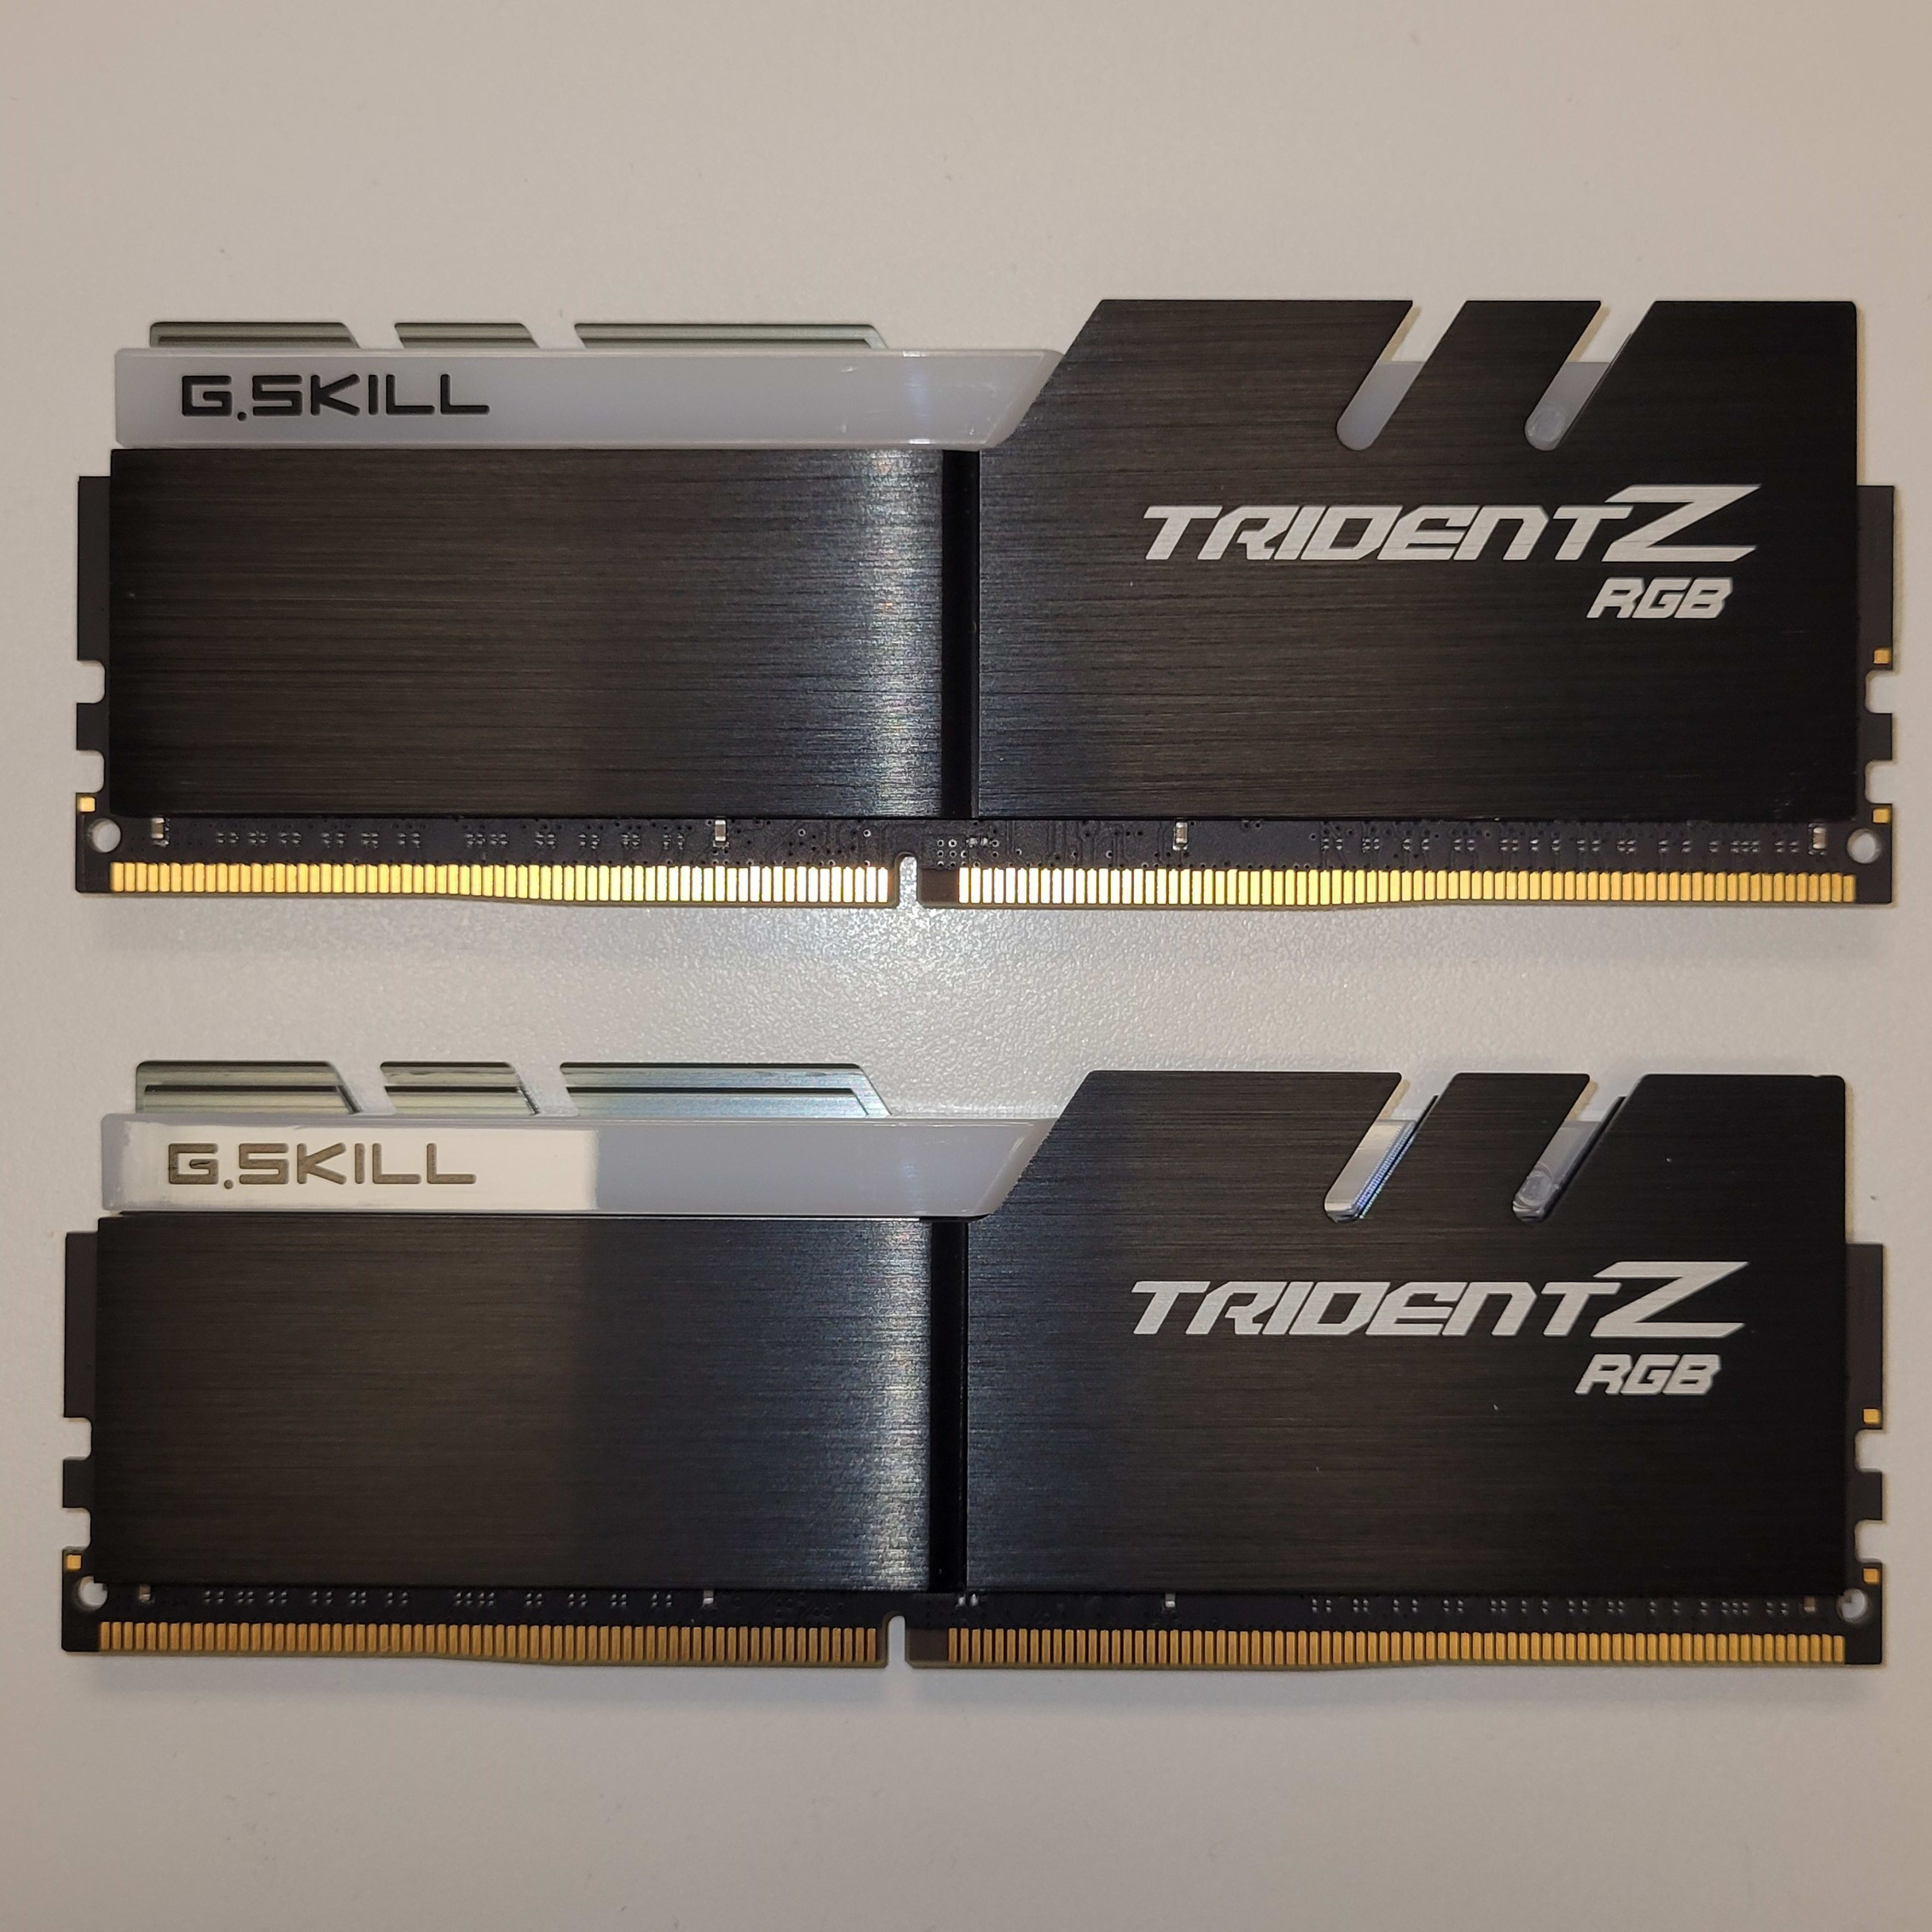 G.SKILL Trident Z RGB 32GB, DDR4 3600, CL16, (2 x 16GB kit)